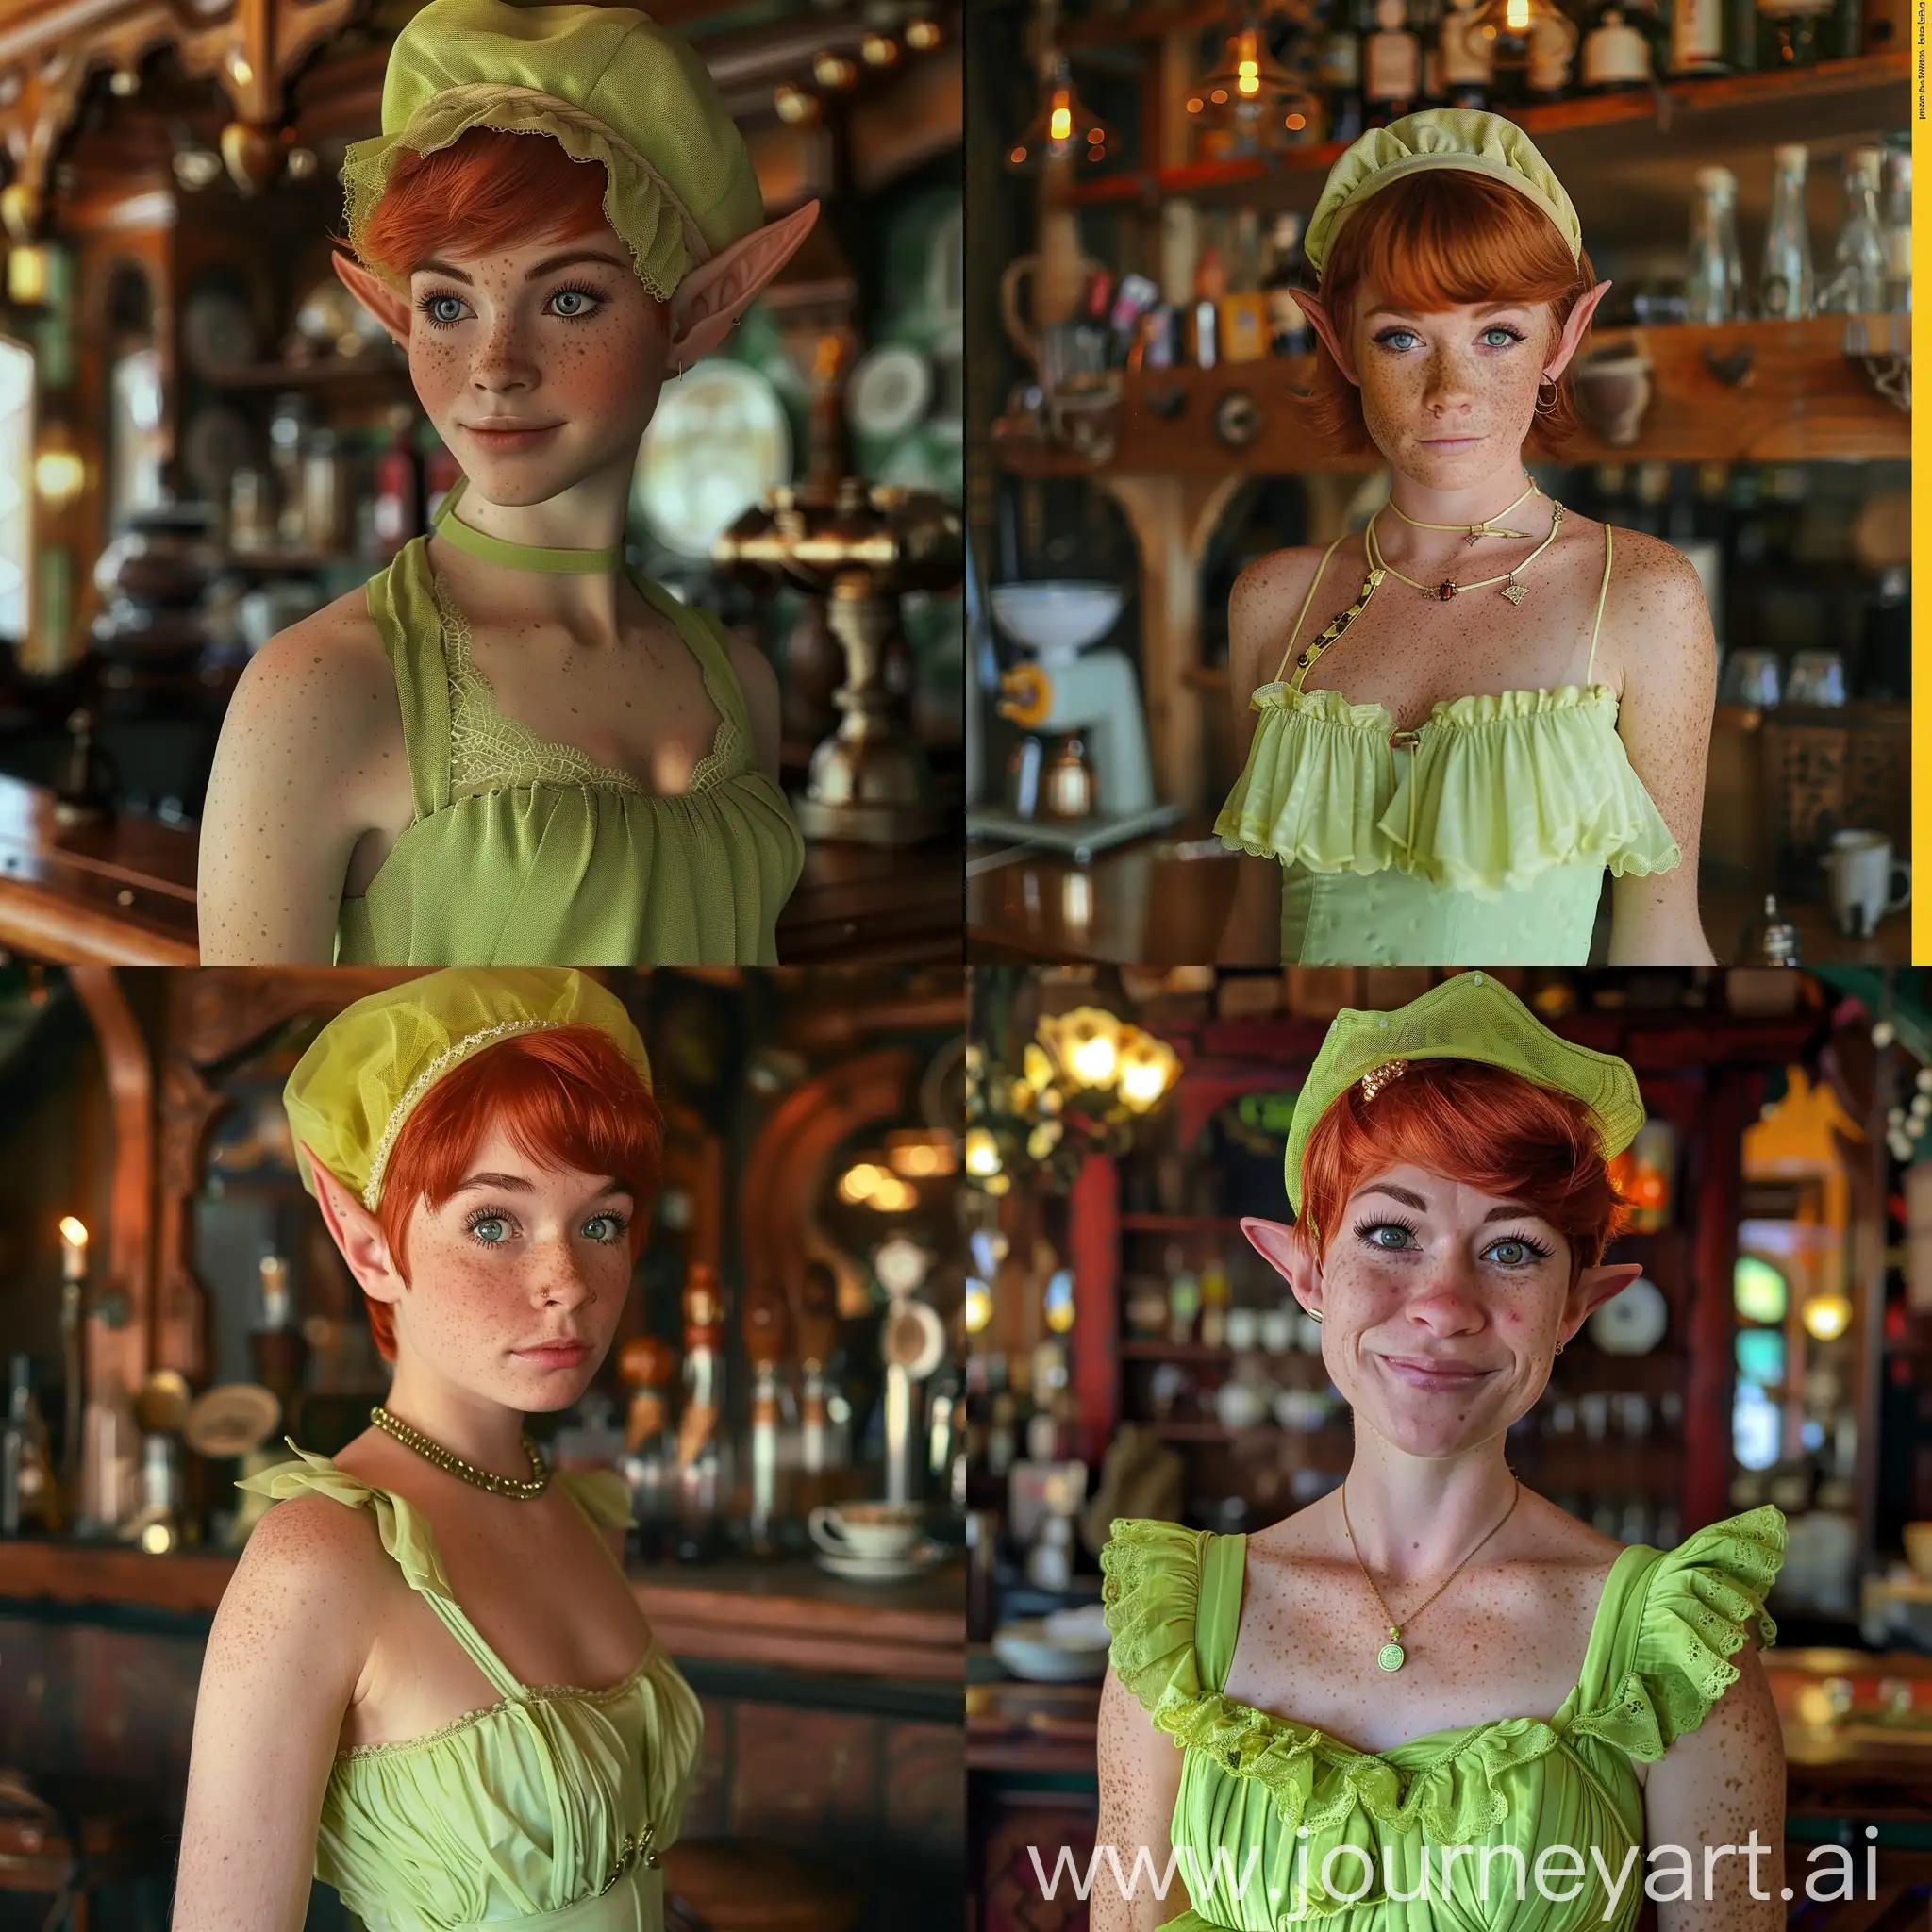 elf, red hair, short hair, freckles, hair cap, lime green dress, tea maid, tavern